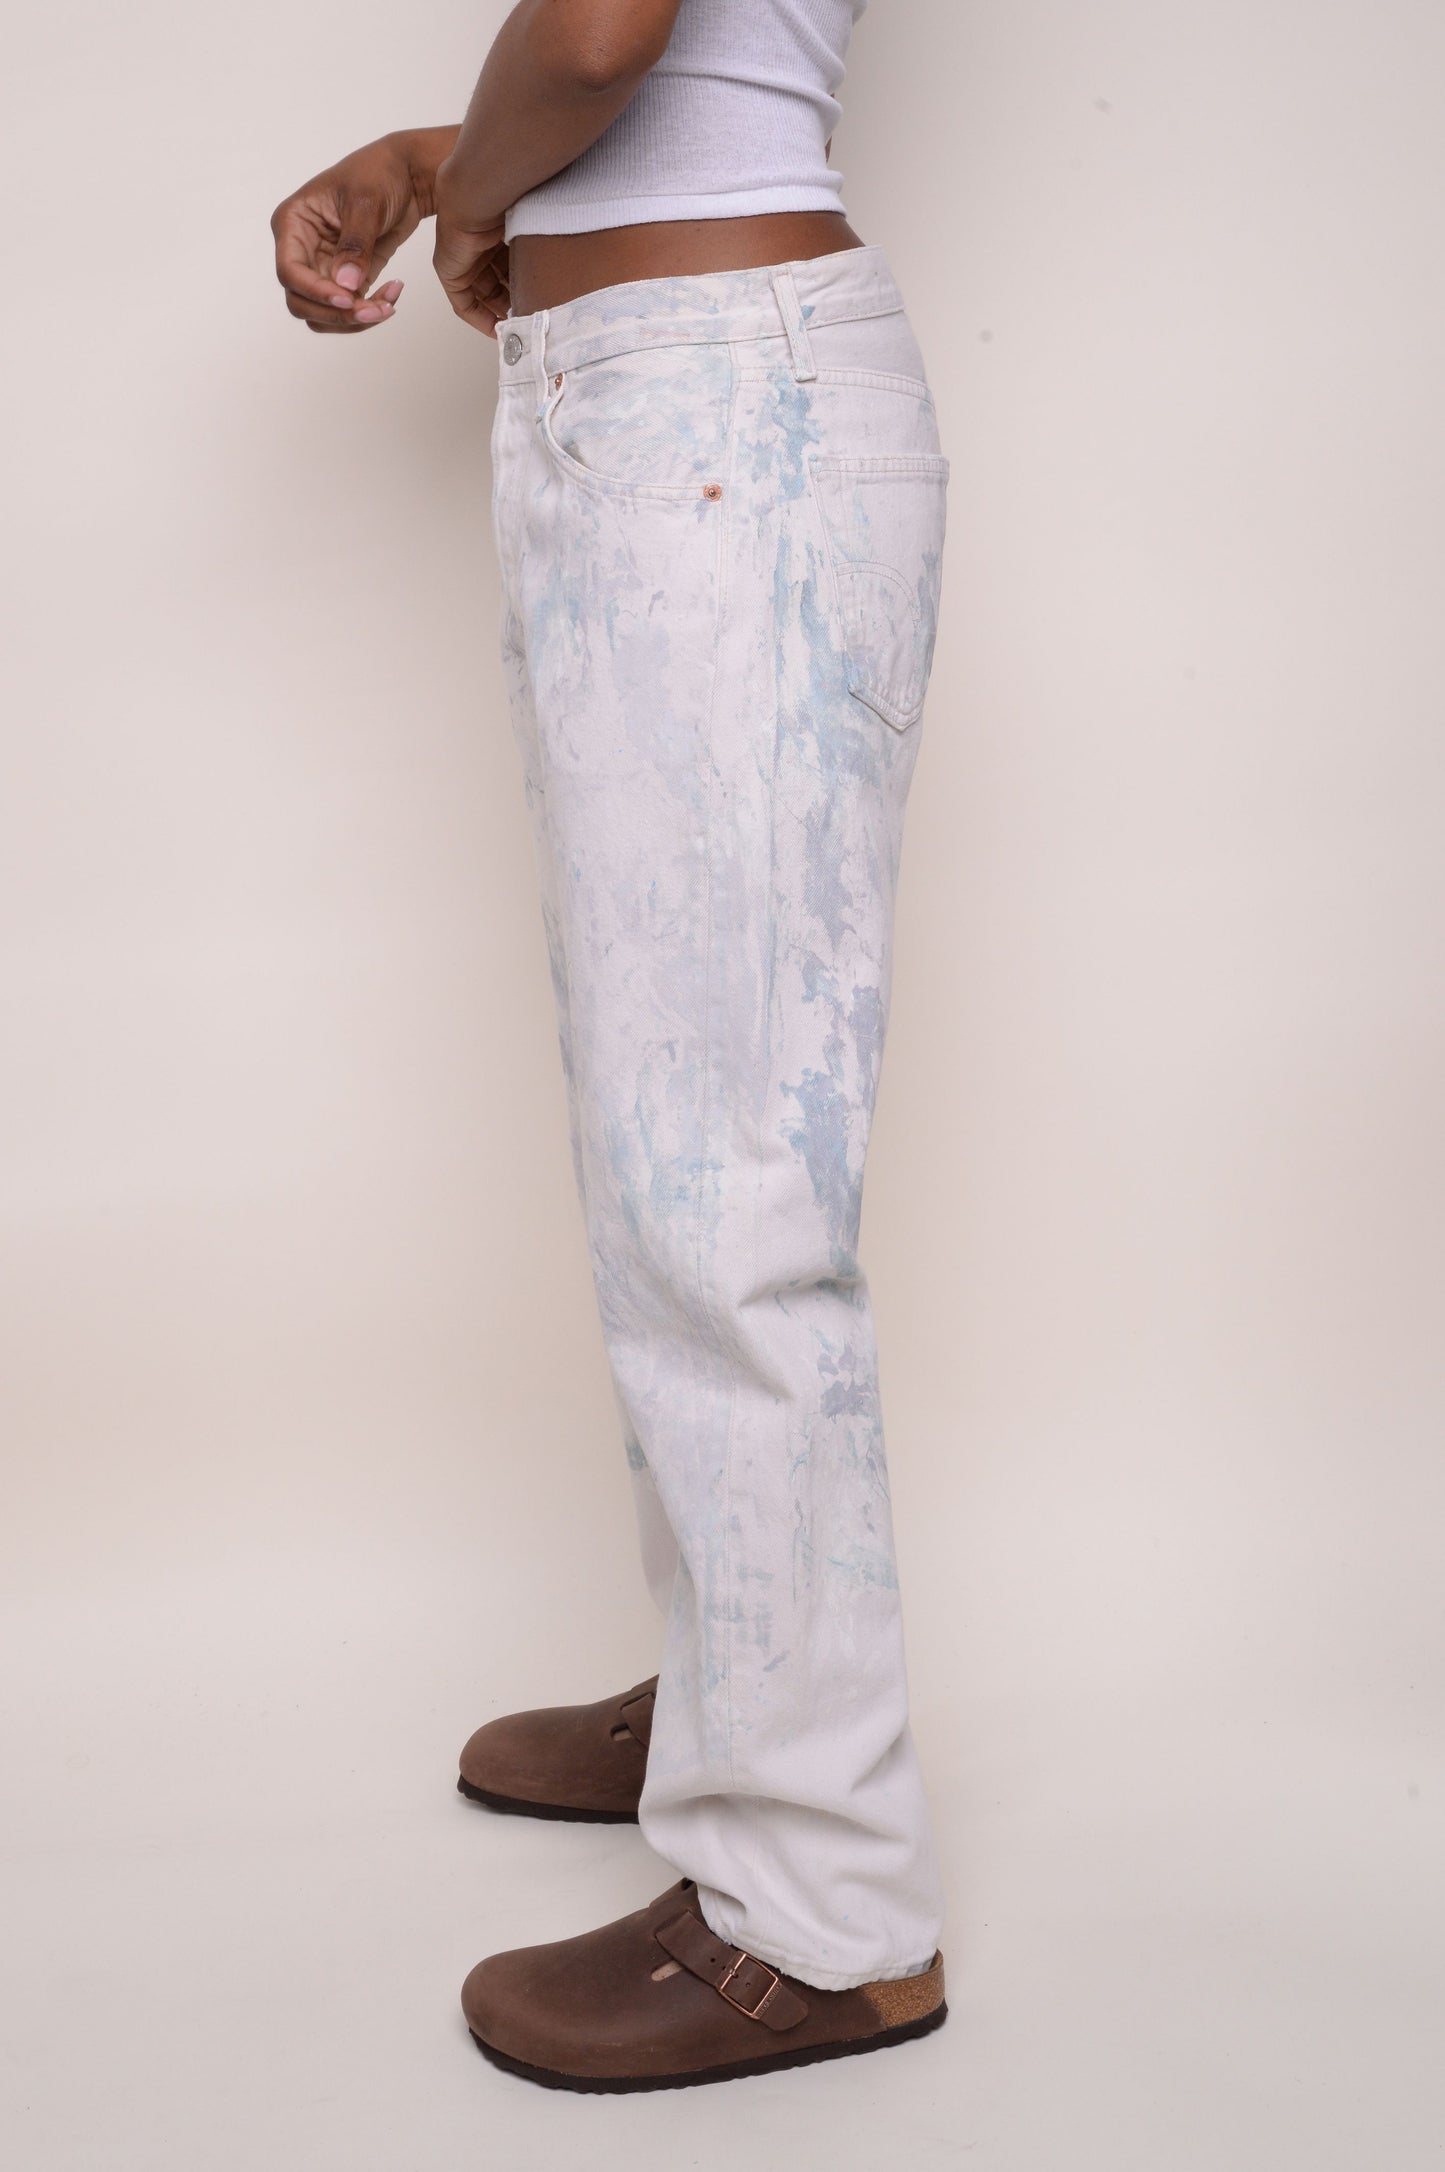 Levi's Straight 501 Painter's Jeans 31W x 30L